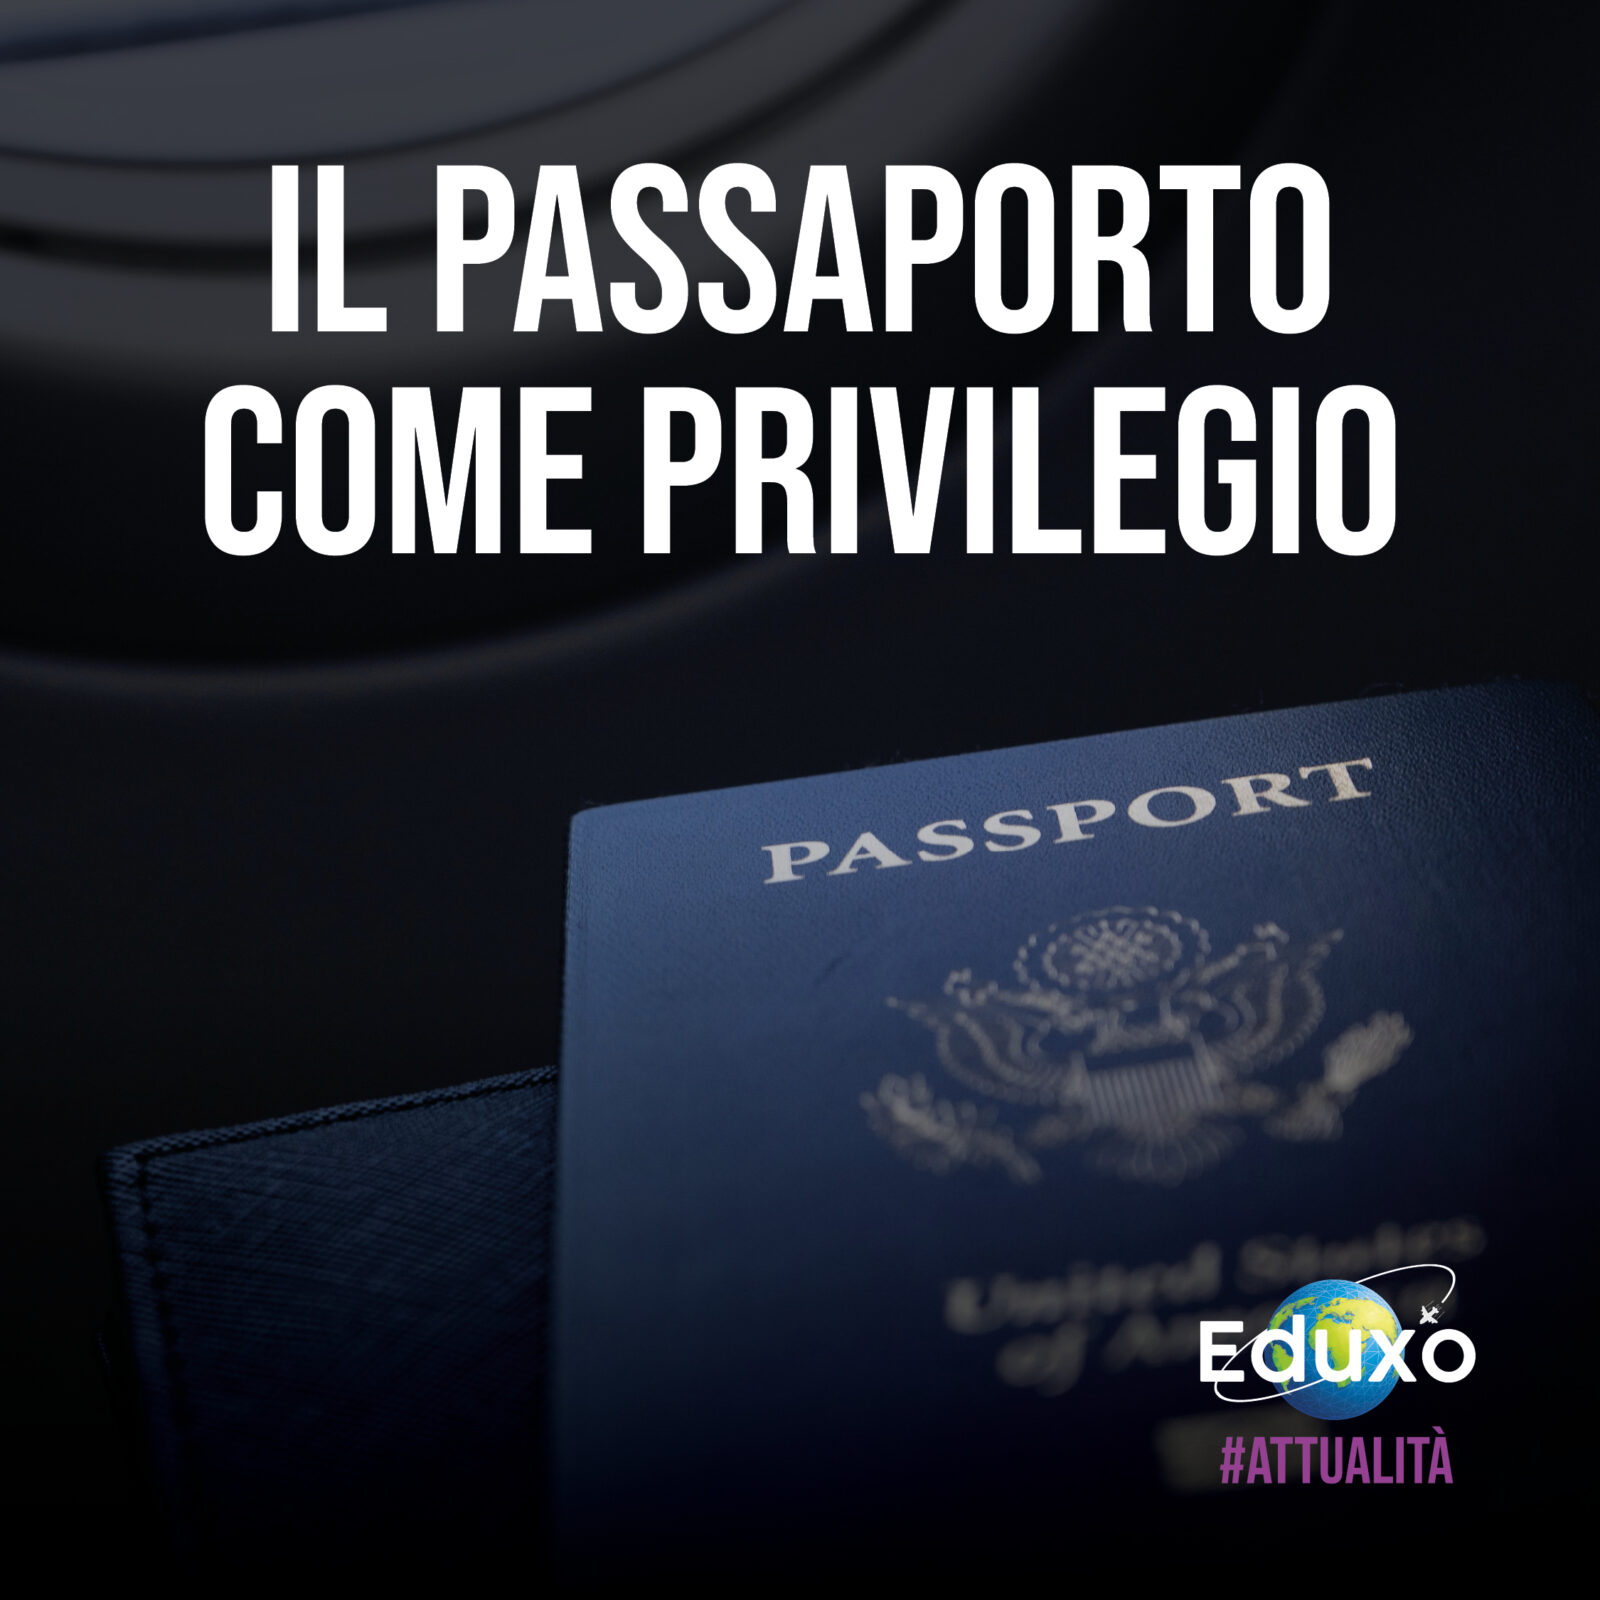 Al momento stai visualizzando Il passaporto come privilegio